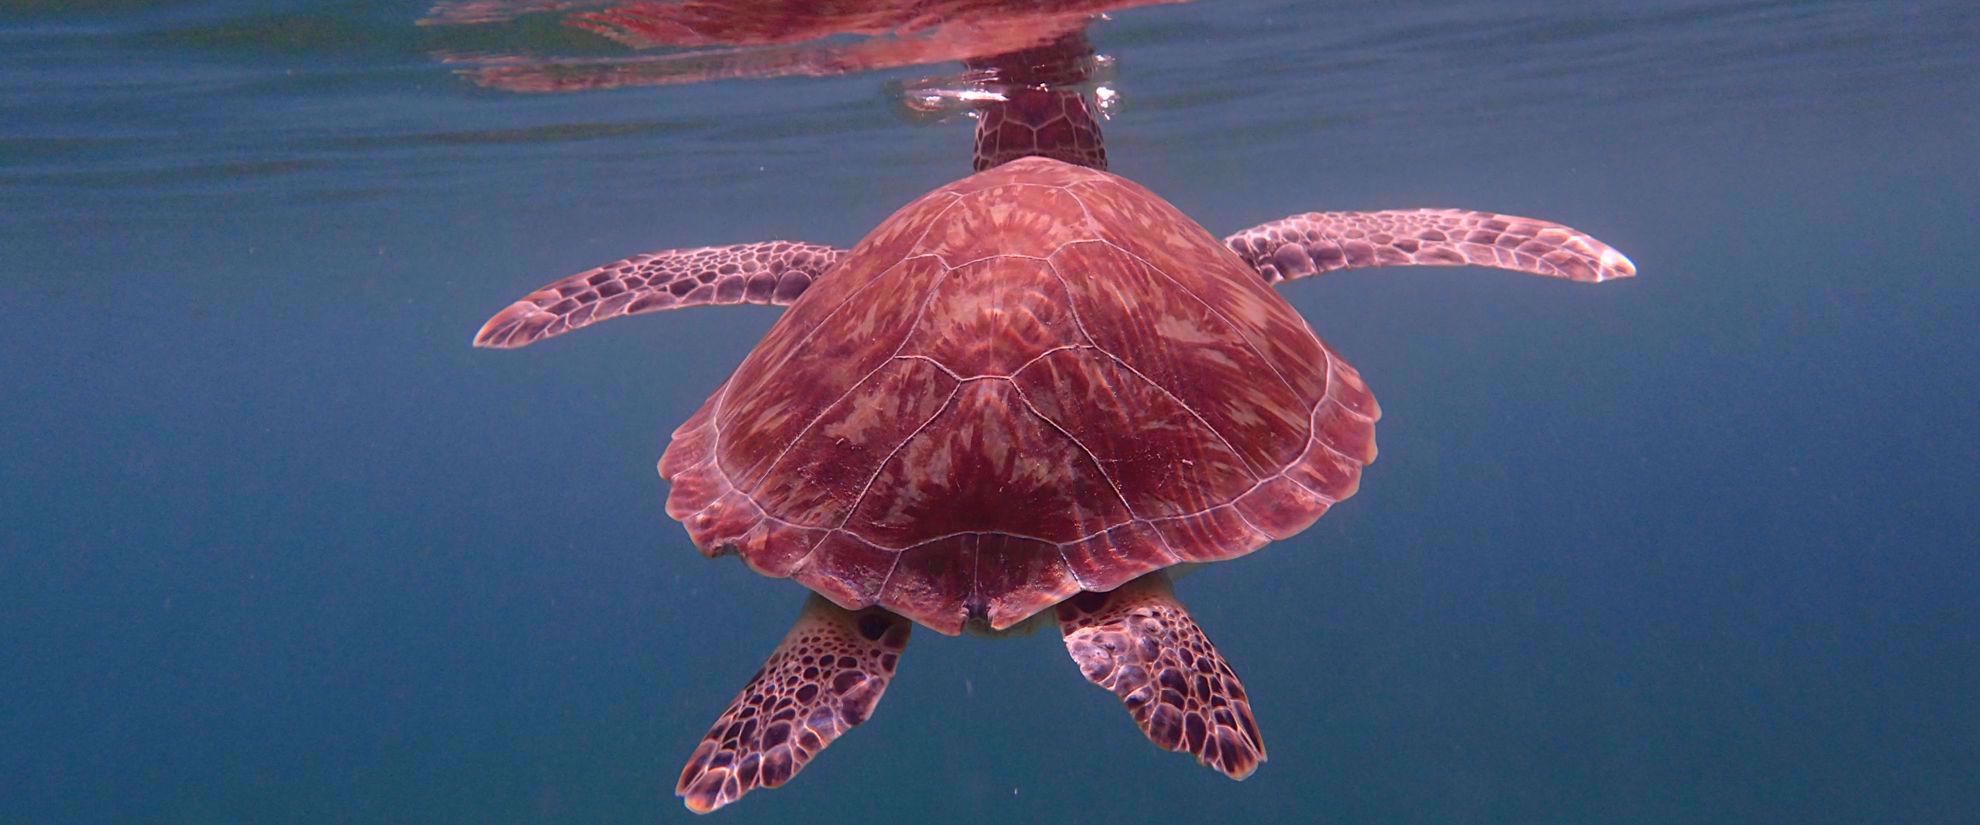 Turtle floating in calm caribbean ocean water